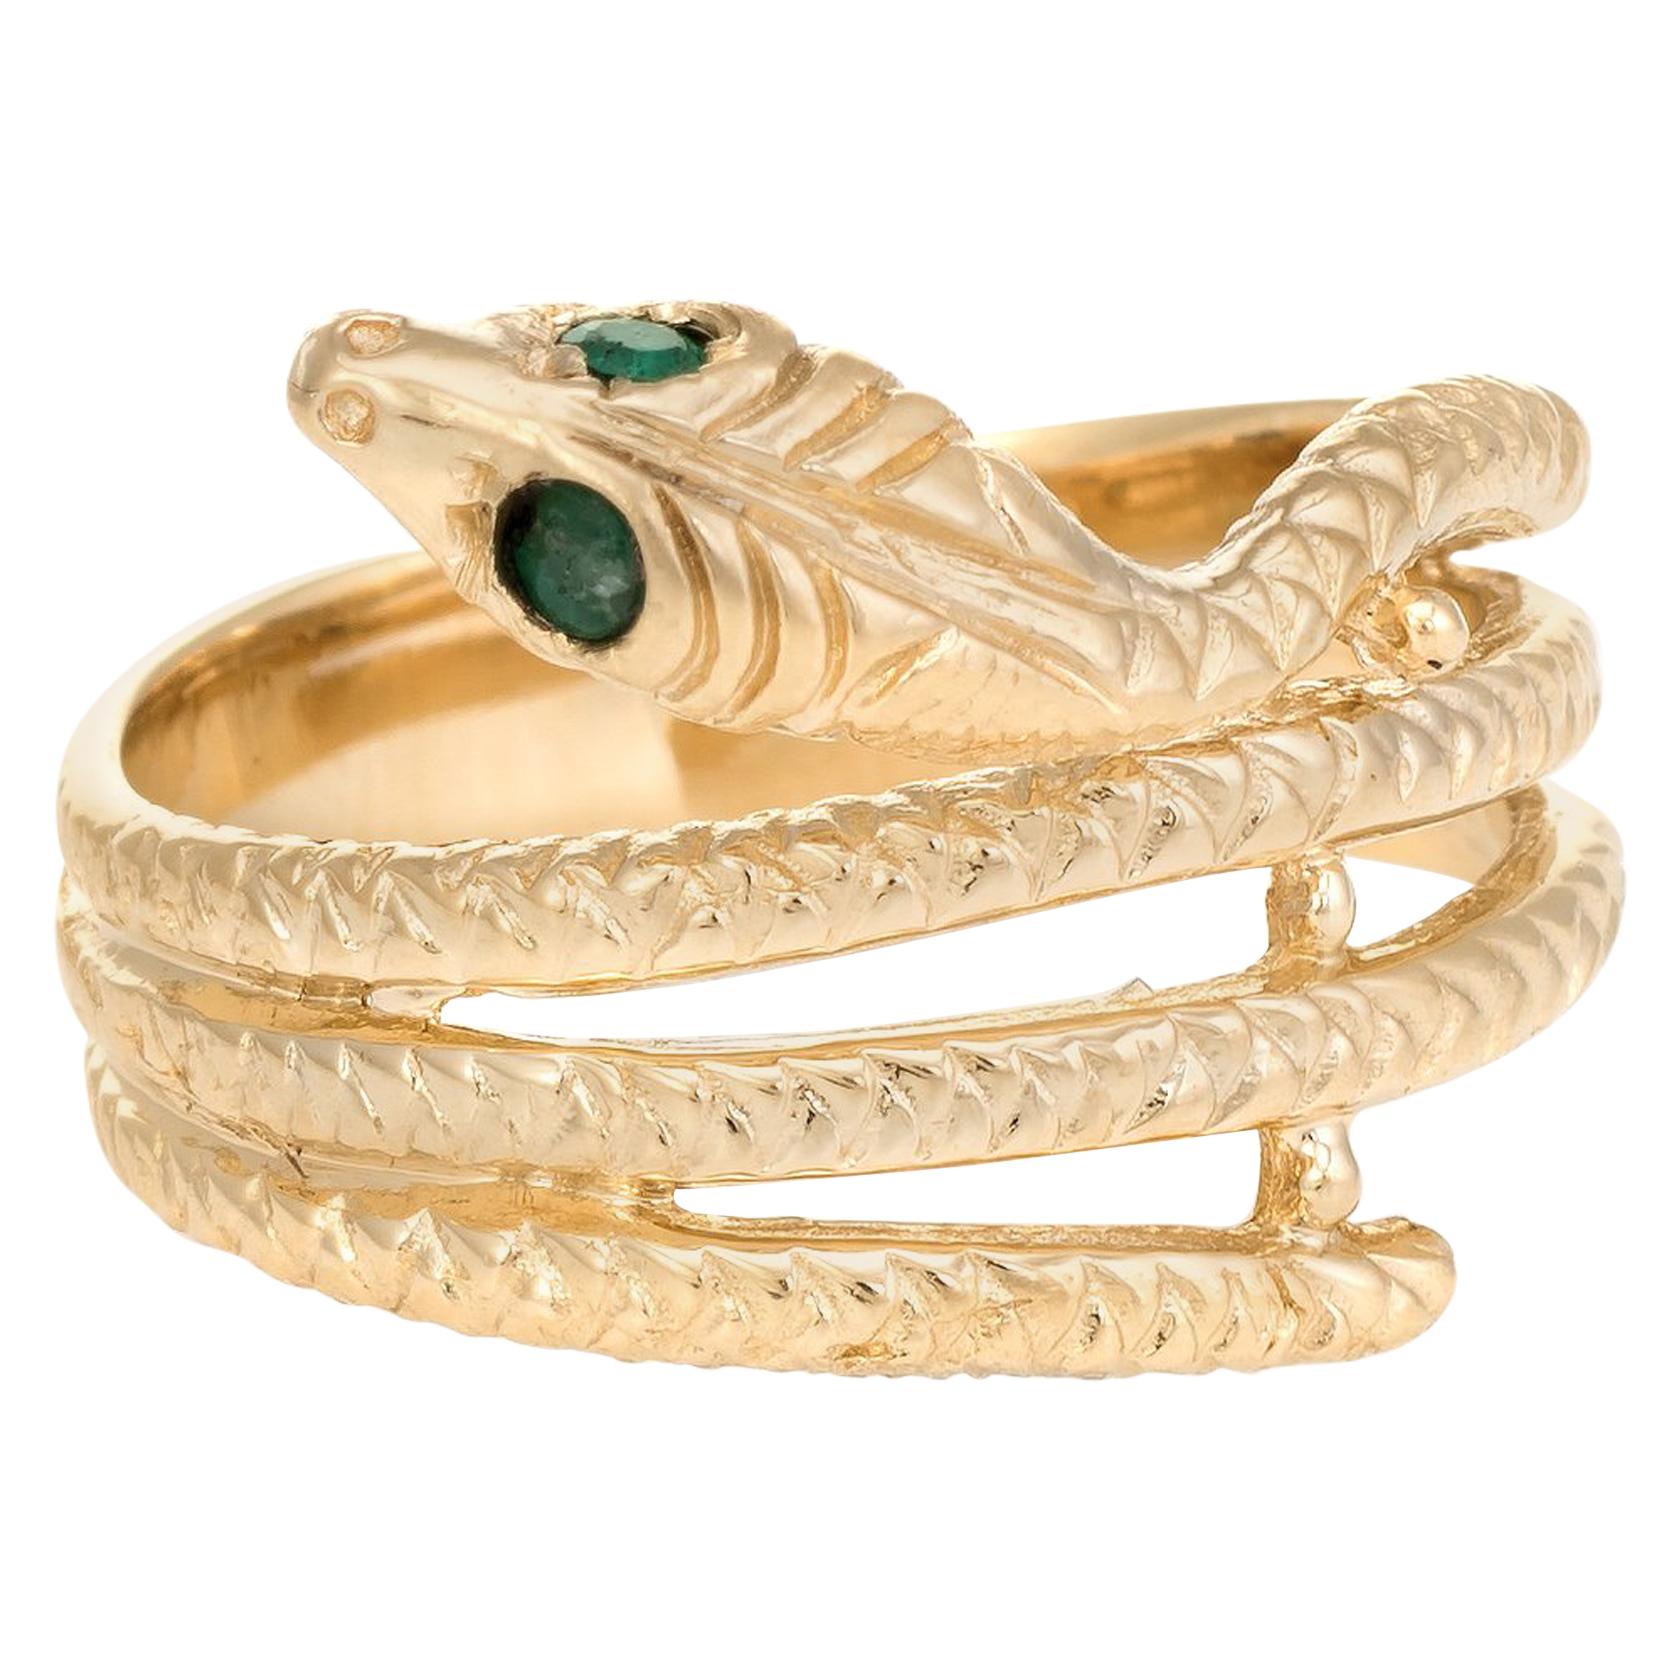 Vintage Snake Ring 14 Karat Yellow Gold Emerald Eyes Alternative Wedding Band